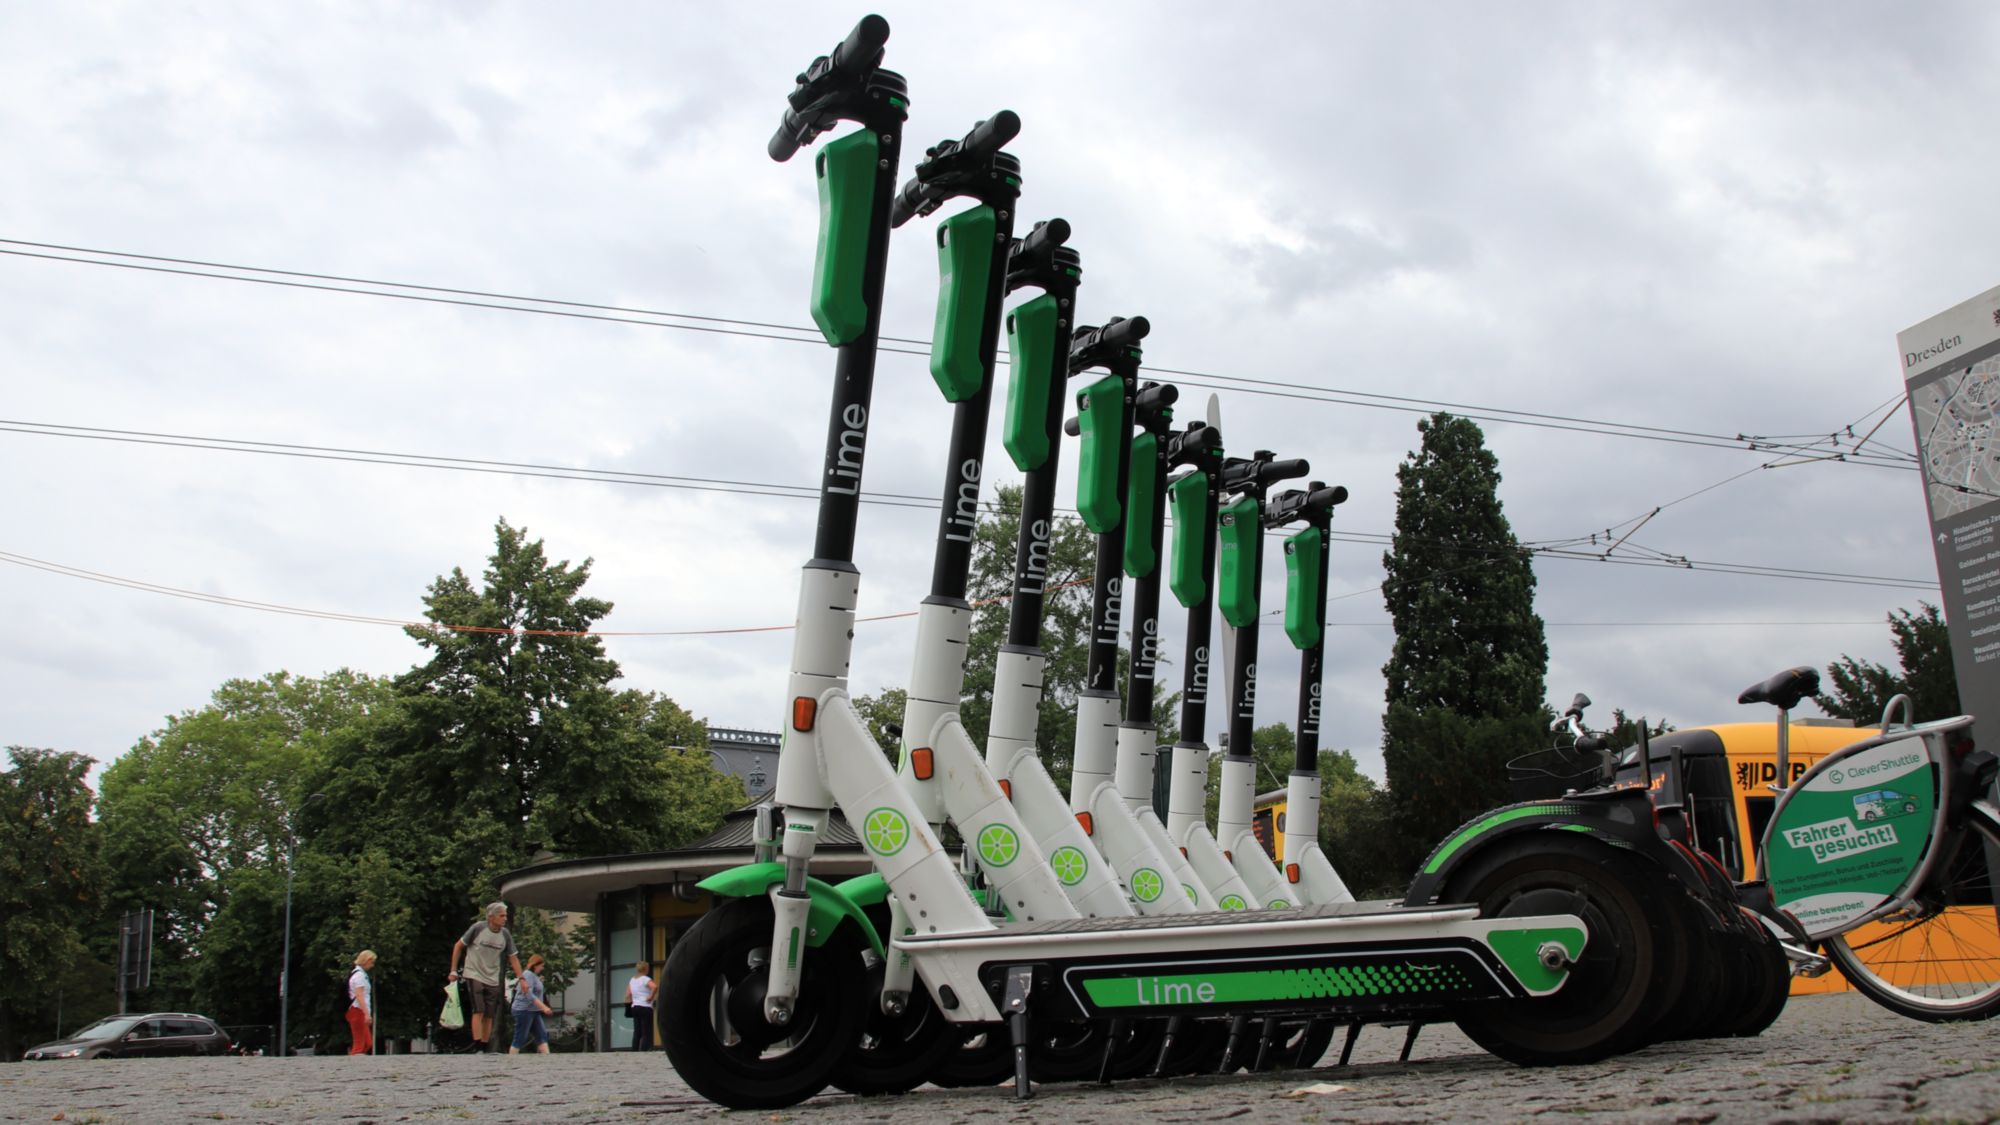 Mehr als 200 dieser grün-weißen Roller hat Lime in Dresden schon am Start.